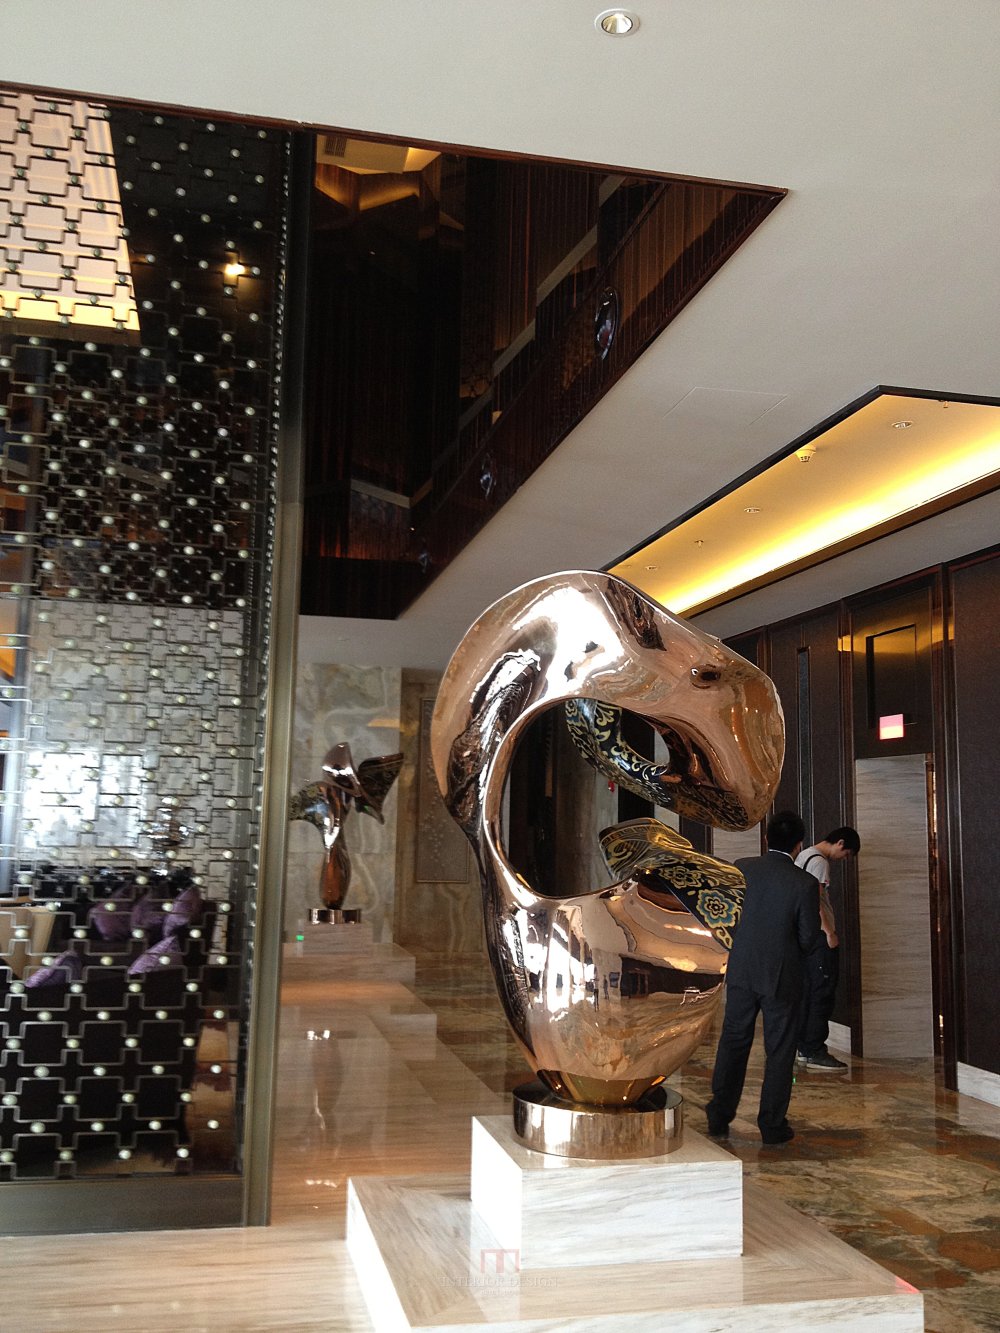 成都丽思卡尔顿酒店The Ritz-Carlton Chengdu(欢迎更新,高分奖励)_IMG_2936.jpg